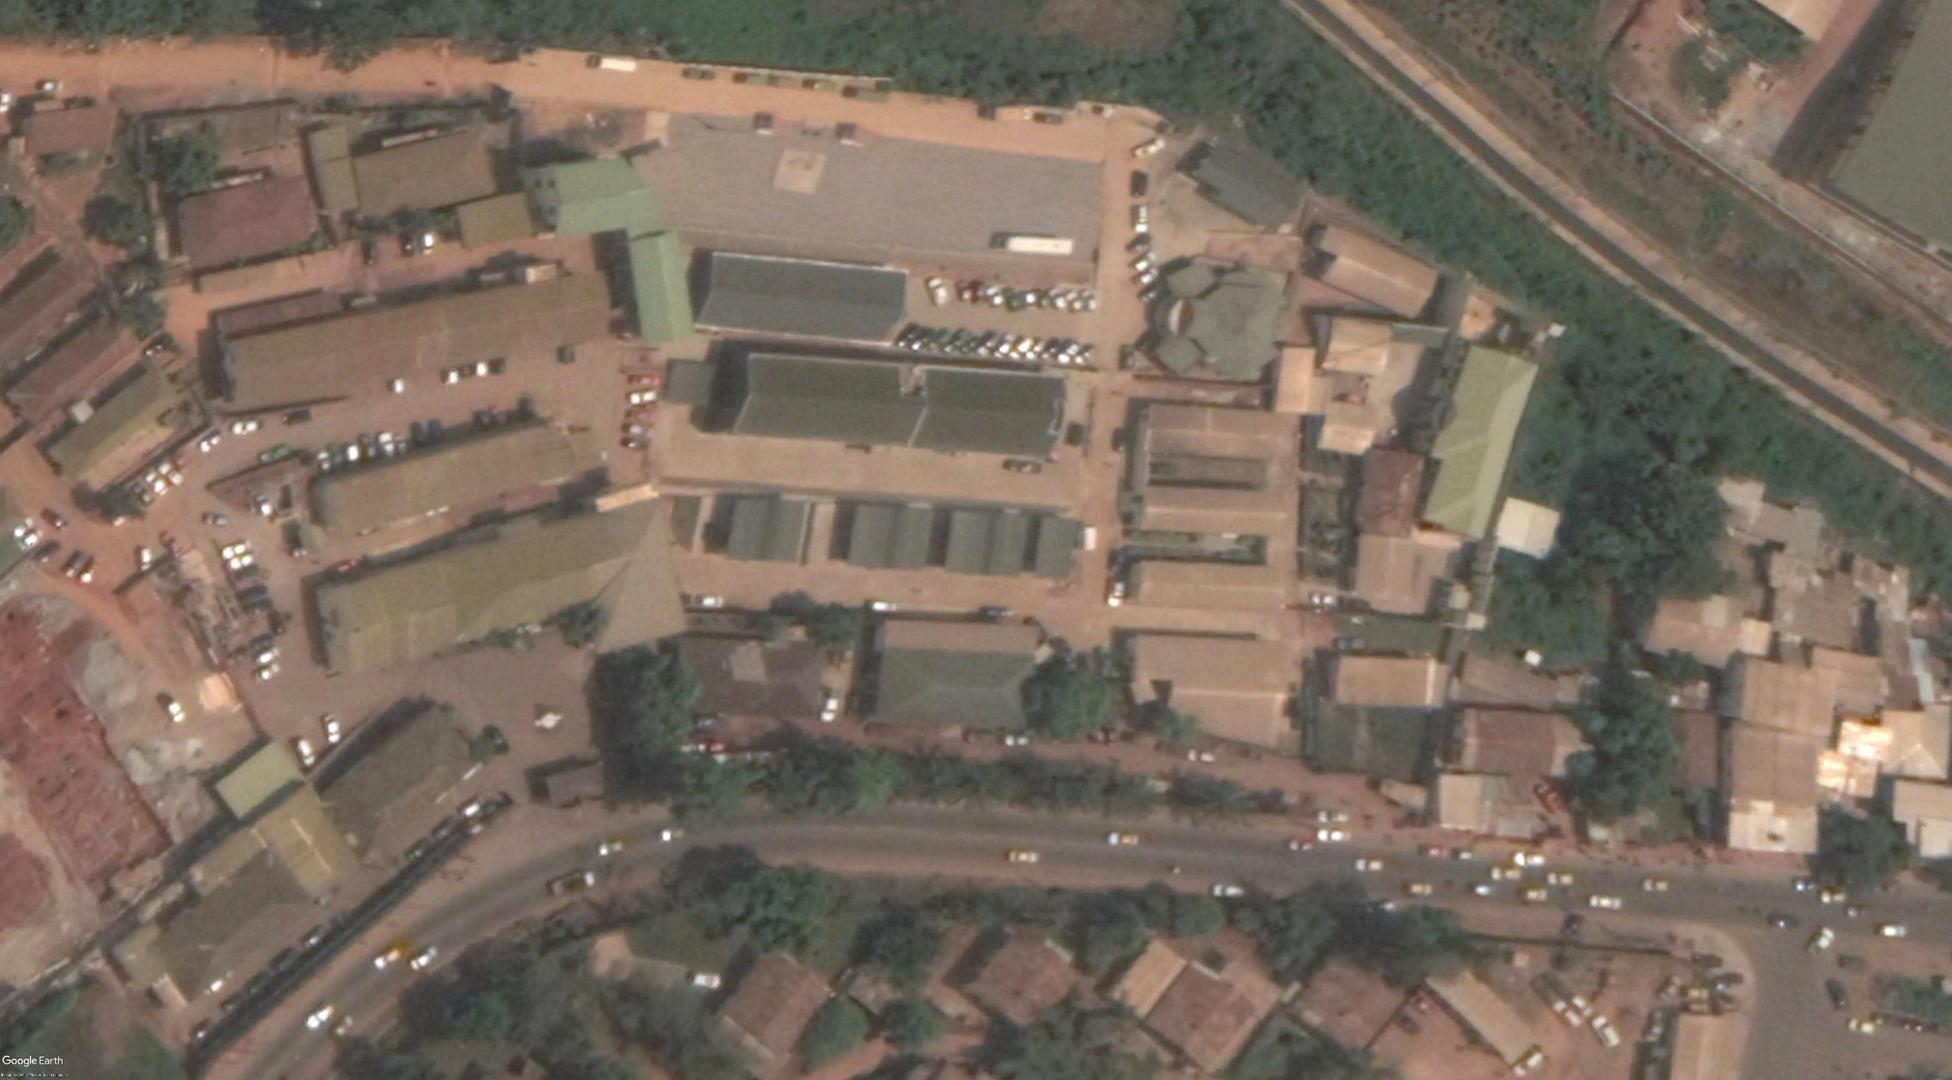 Satellite image showing the location of the State Defense Secretariat (Secrétariat d’État à la défense, SED) in Yaoundé, Cameroon.